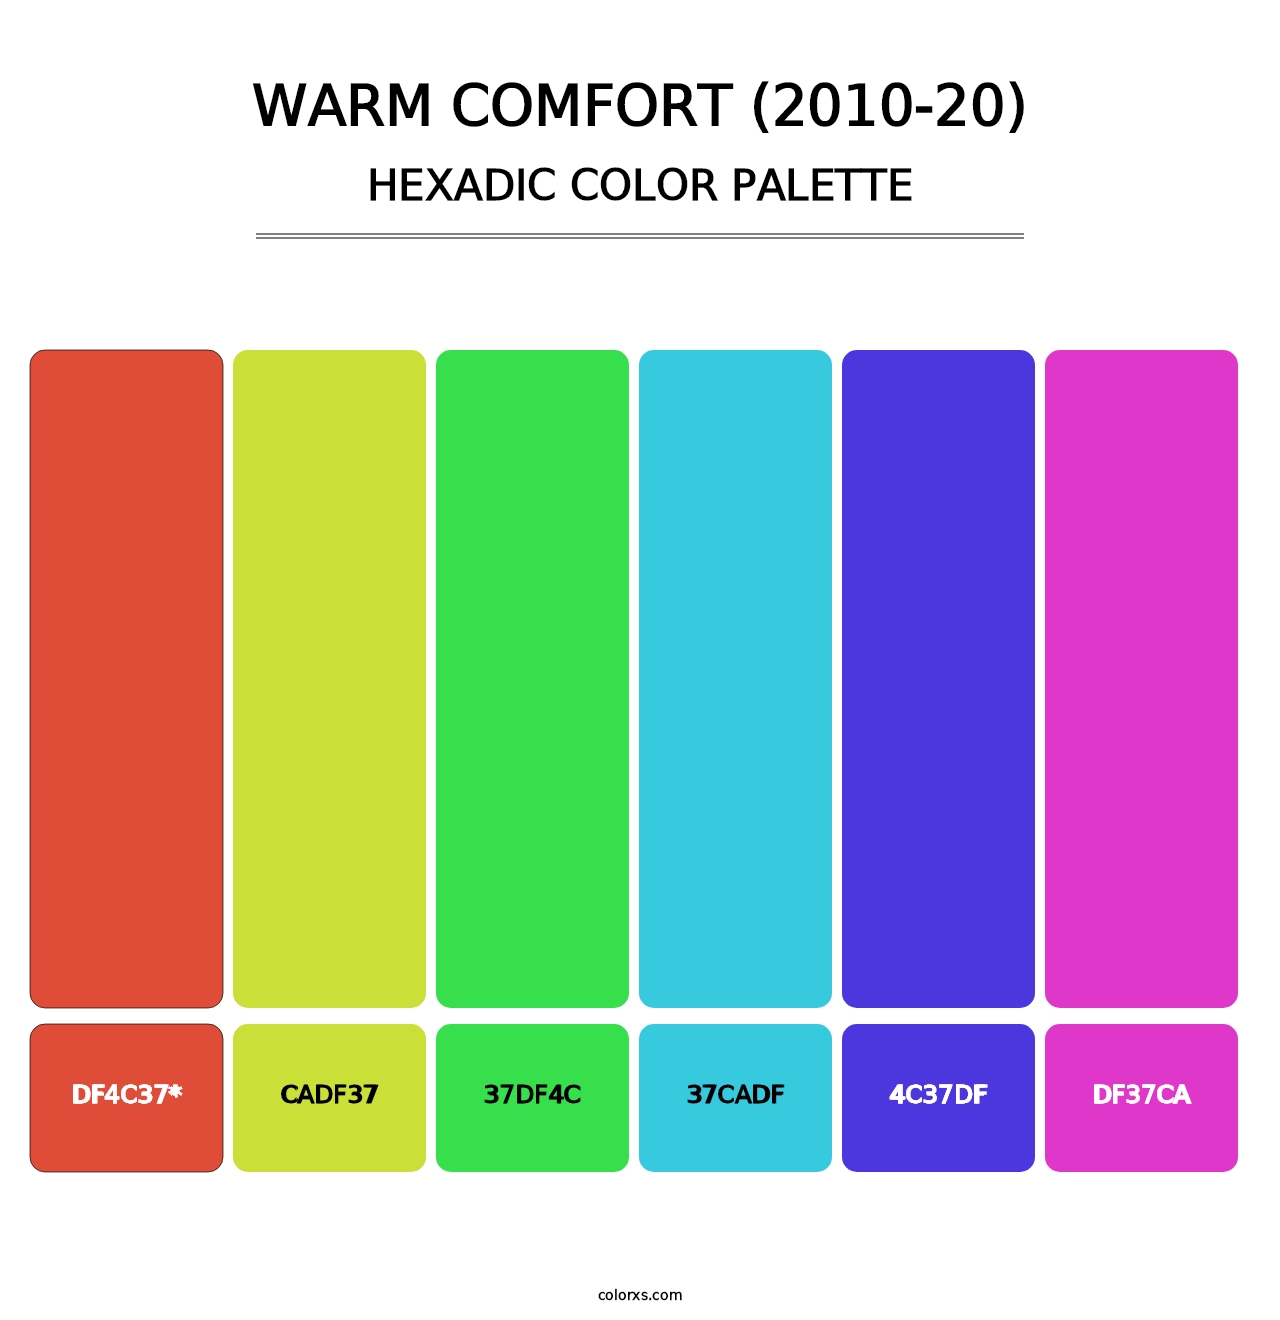 Warm Comfort (2010-20) - Hexadic Color Palette